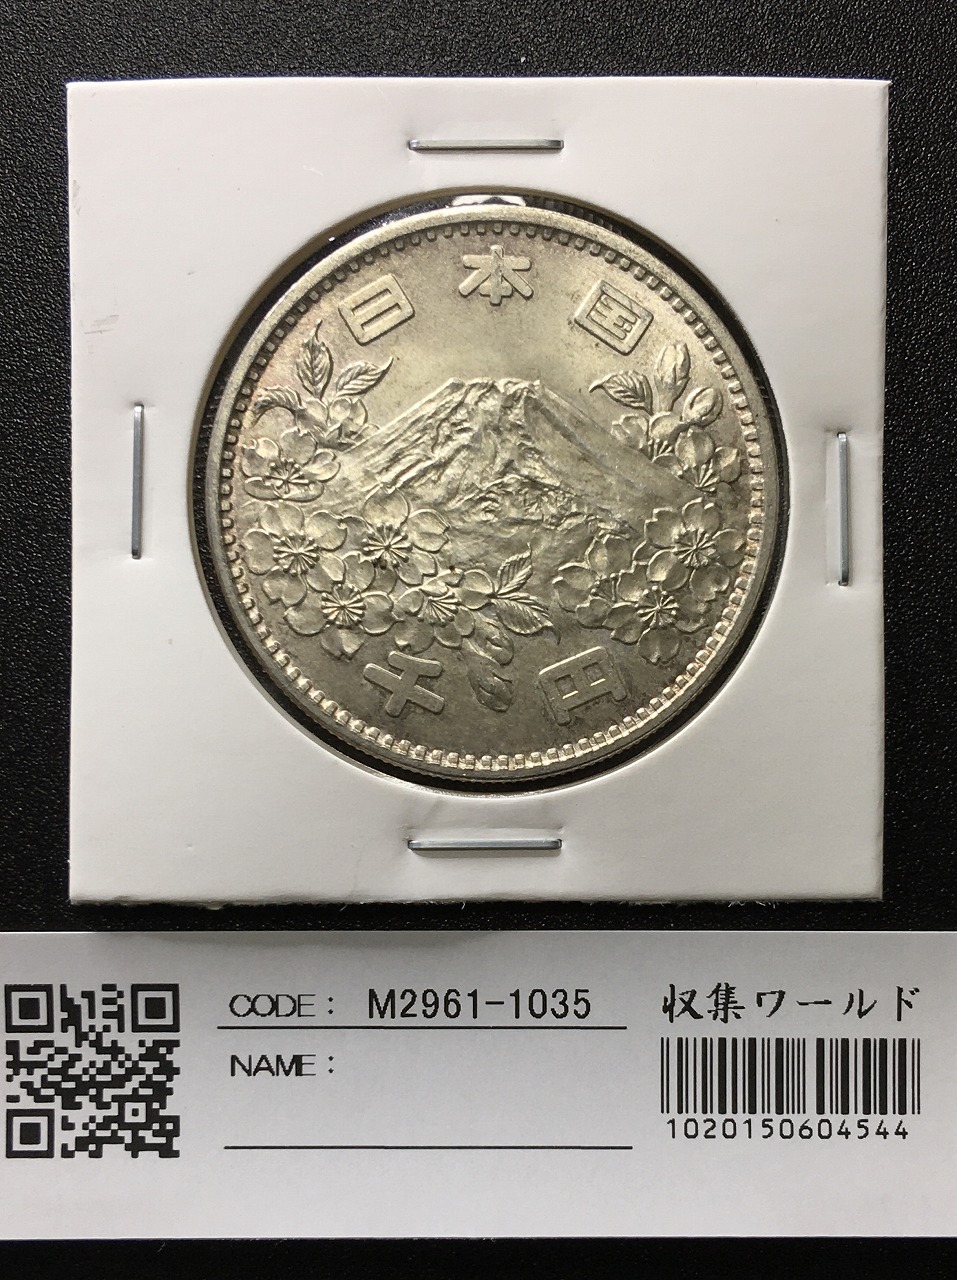 東京オリンピック記念 1964年(S39) 1000円銀貨 未使用-1035